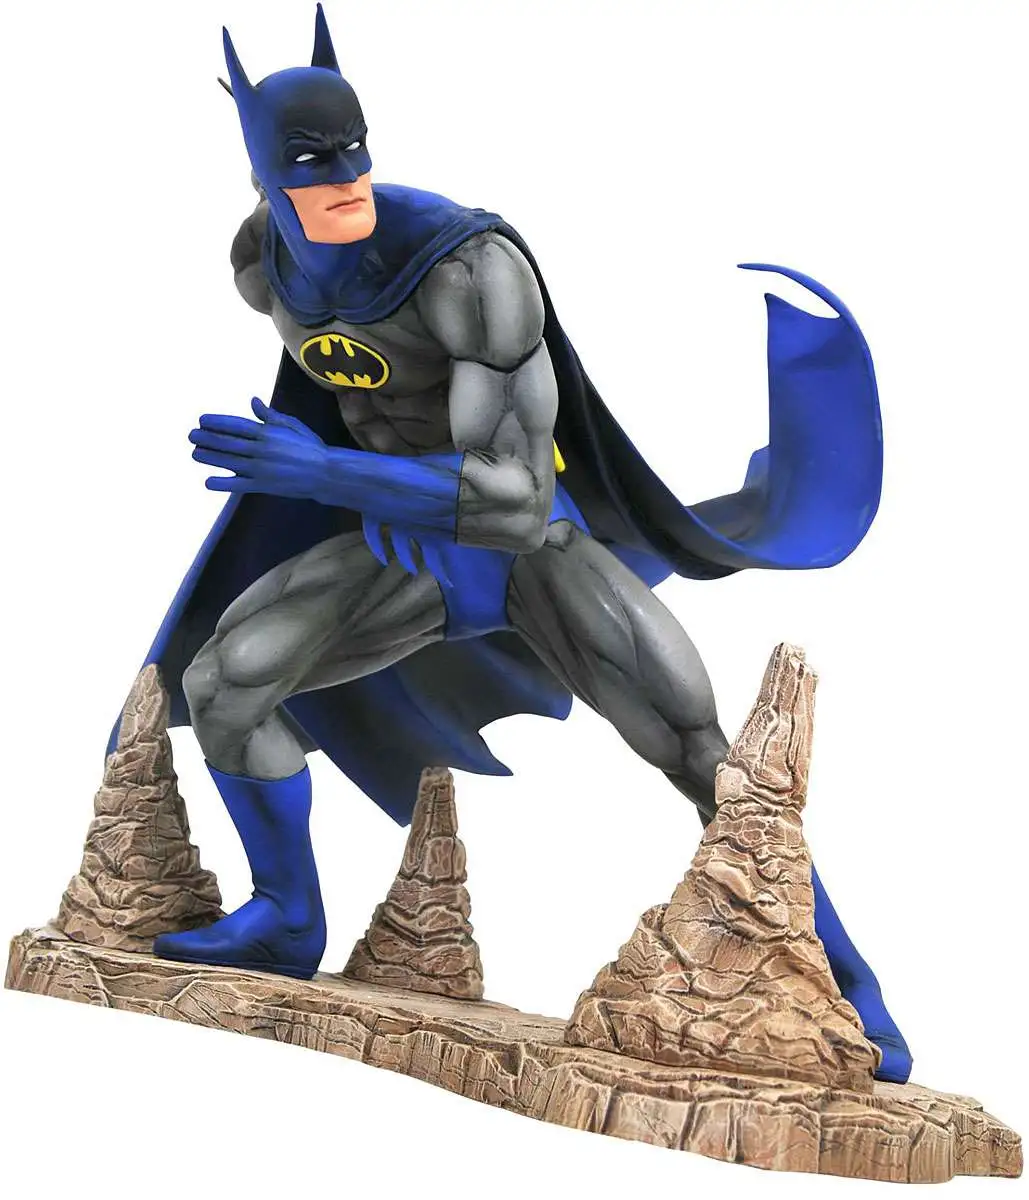 DC Gallery Batman Justice League PVC 9 Inch Figure Diamond Select for sale online 